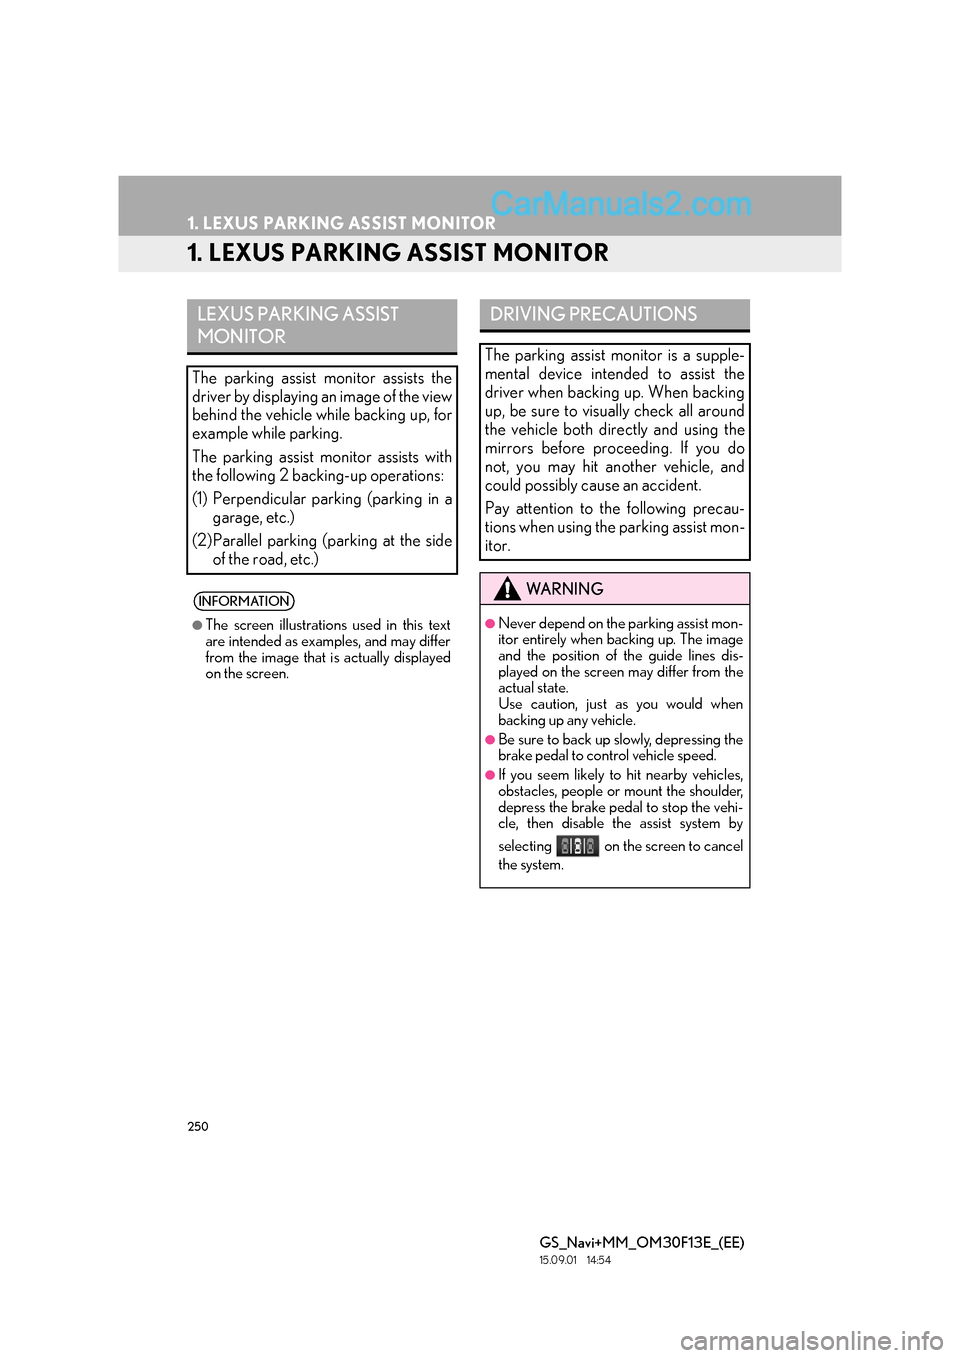 Lexus GS350 2015  Navigation Manual 250
GS_Navi+MM_OM30F13E_(EE)
15.09.01     14:54
1. LEXUS PARKING ASSIST MONITOR
1. LEXUS PARKING ASSIST MONITOR
LEXUS PARKING ASSIST 
MONITOR
The parking assist monitor assists the
driver by displayin